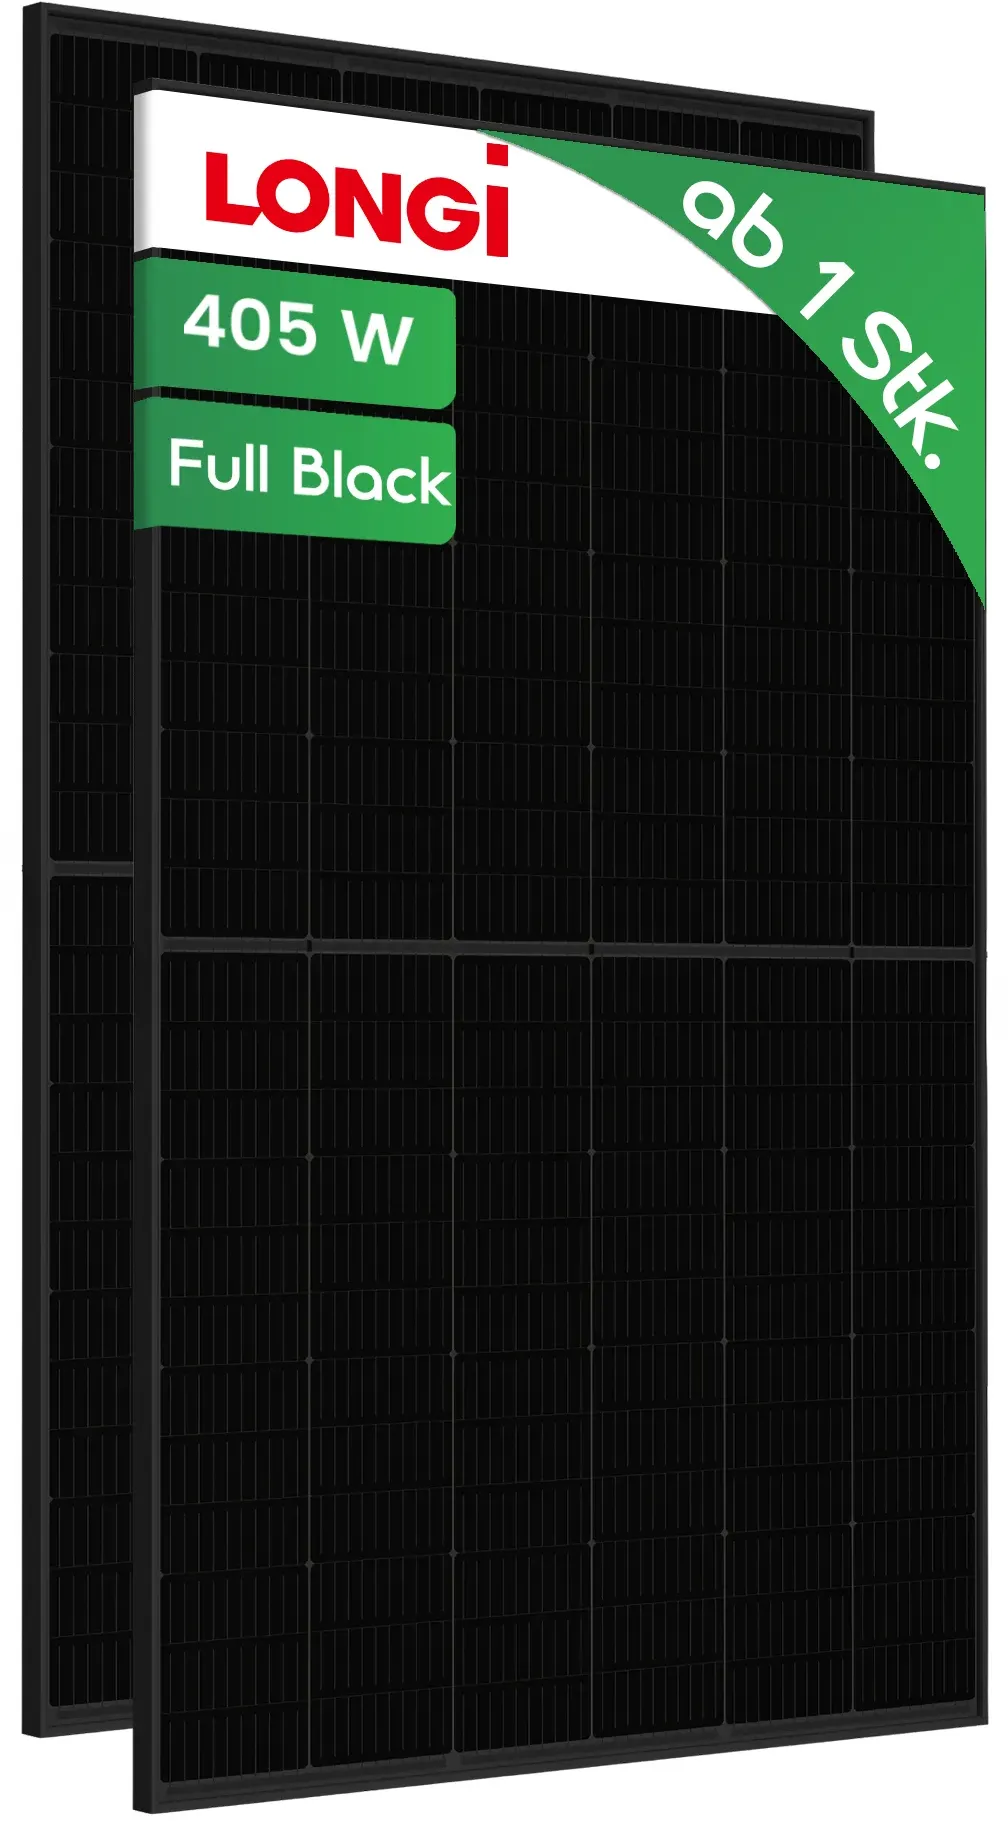 405W Longi Solar Full Black Monokristallin Solarmodul Full Black  - Preis inkl. MwSt. gem. § 12 Abs. 3 UStG